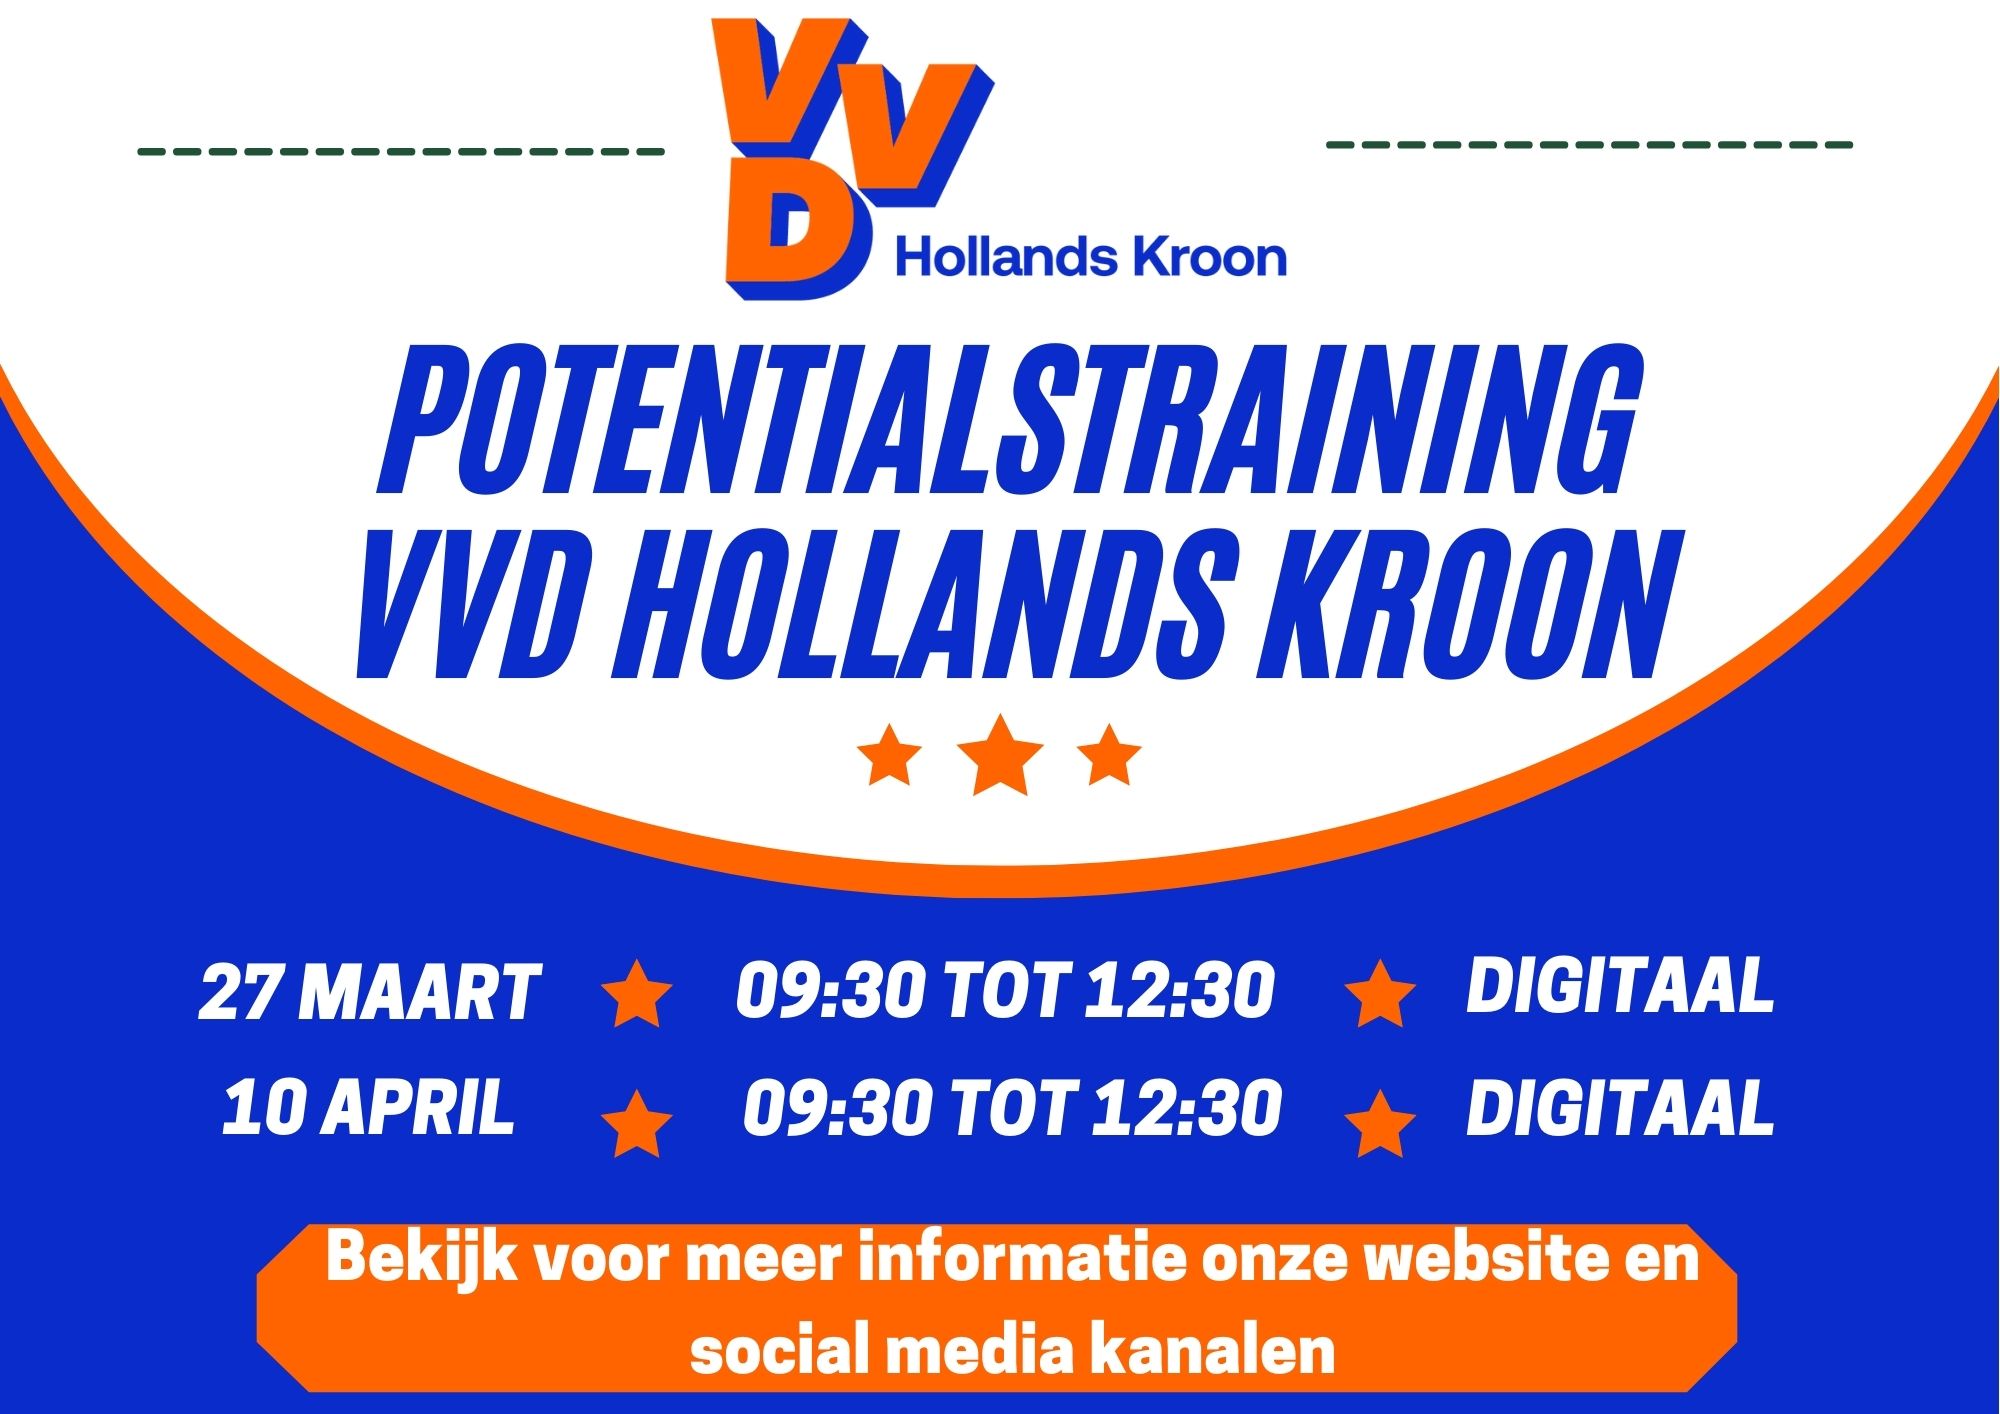 Potentialstraining VVD Hollands Kroon